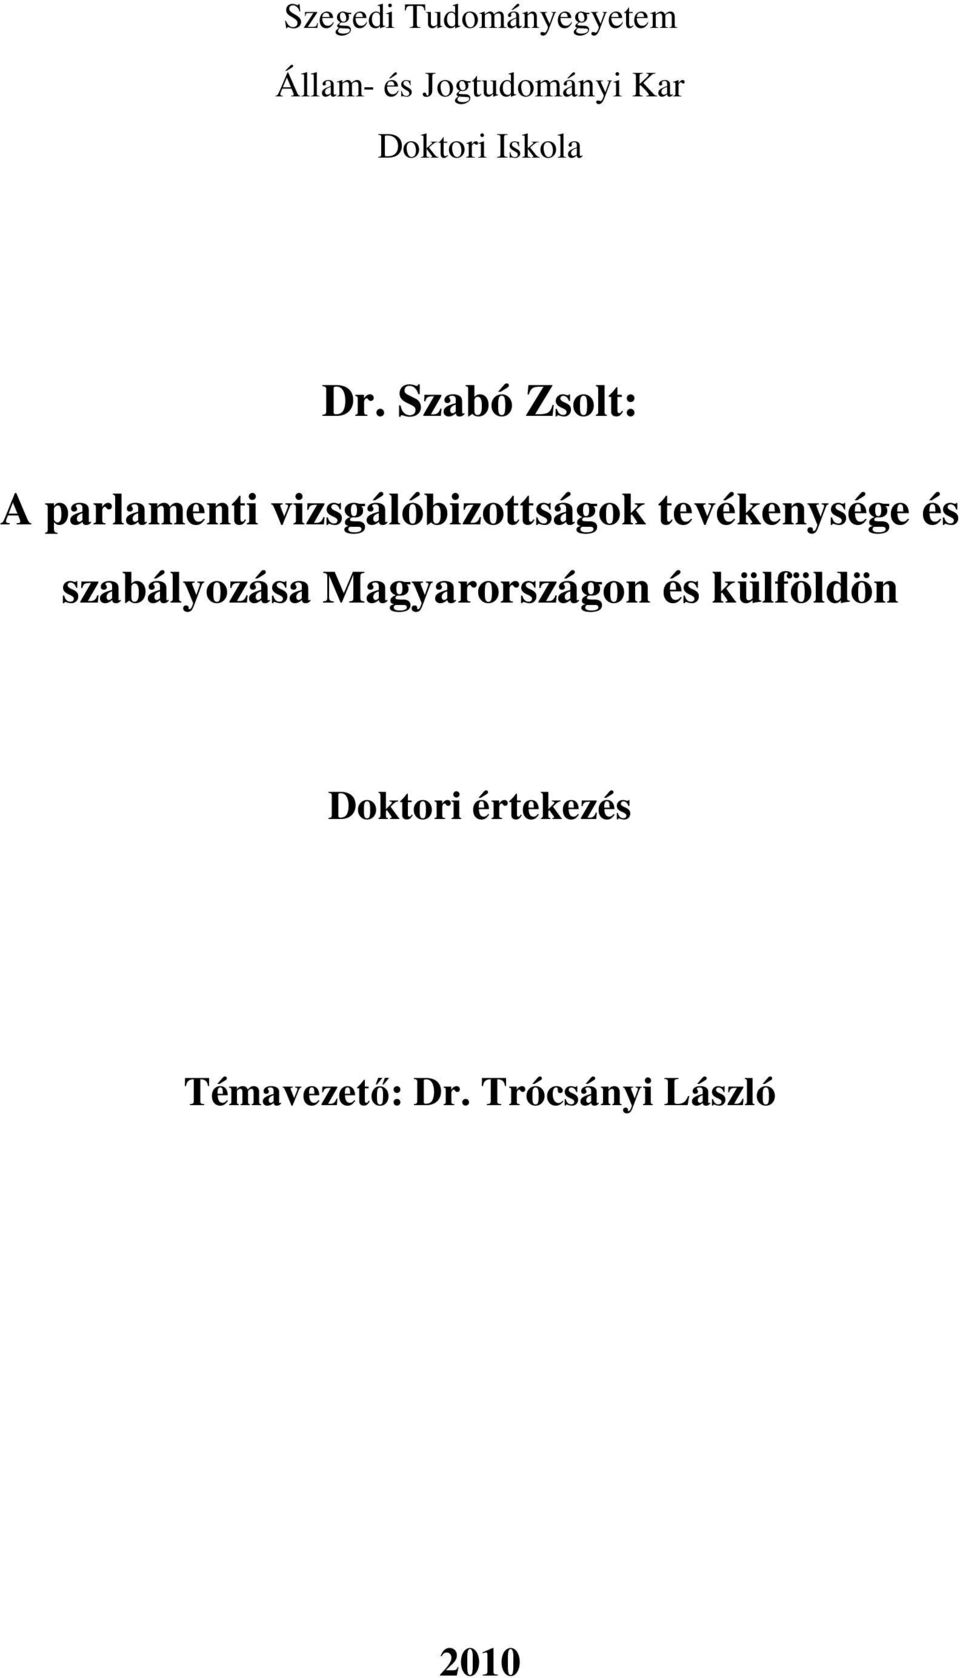 Szabó Zsolt: A parlamenti vizsgálóbizottságok